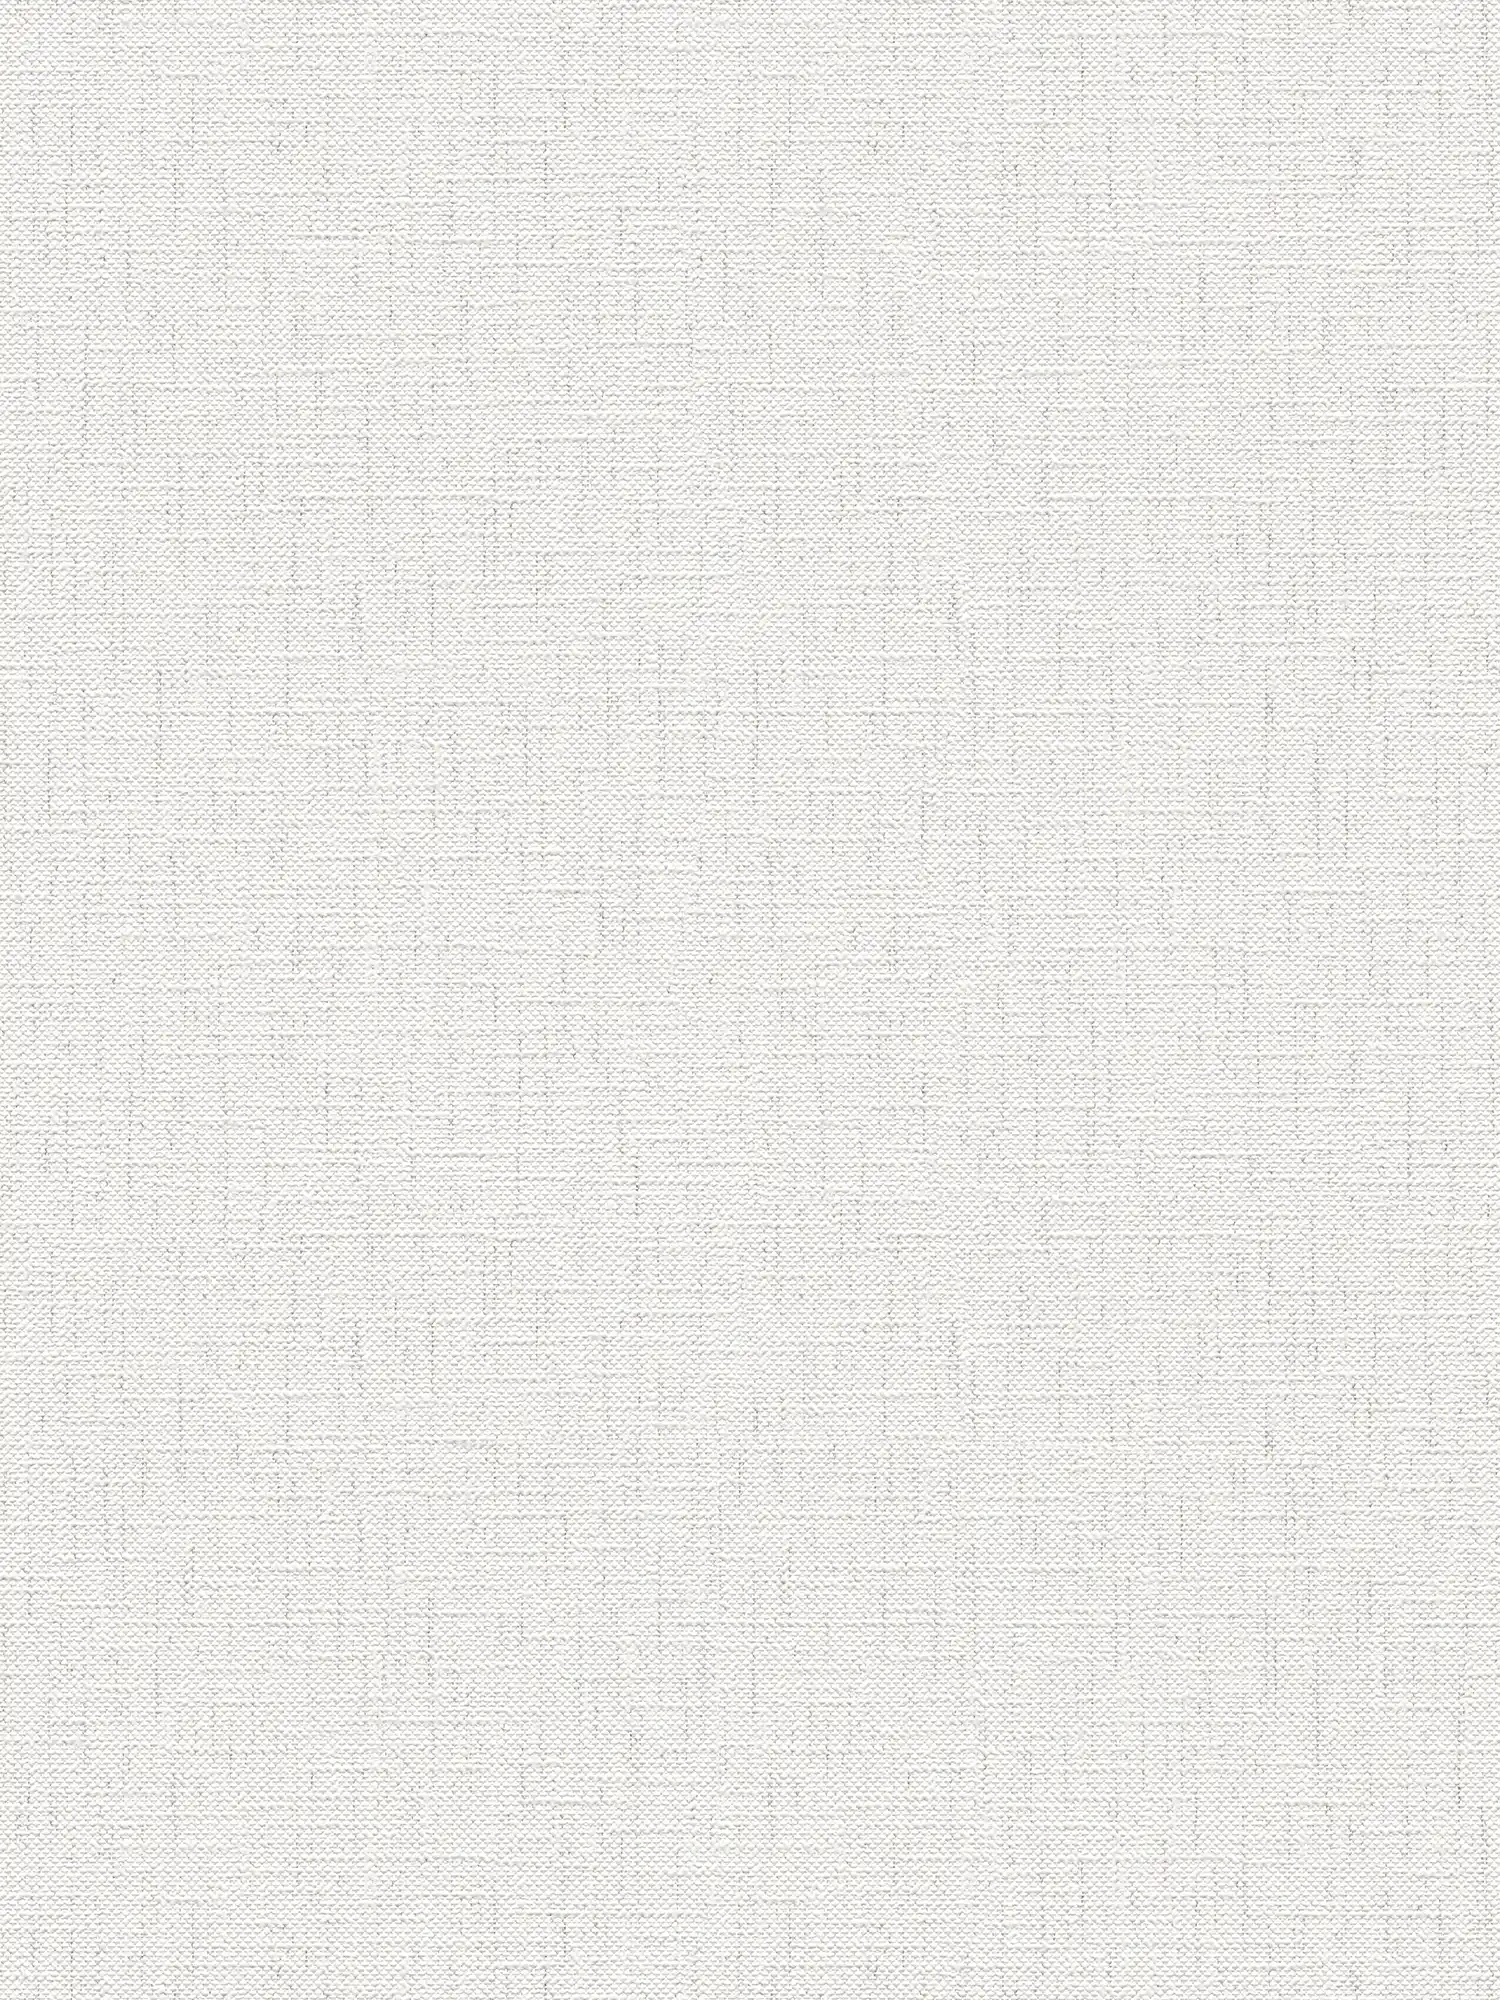 Carta da parati dall'aspetto tessile con colorazione screziata - grigio, bianco
